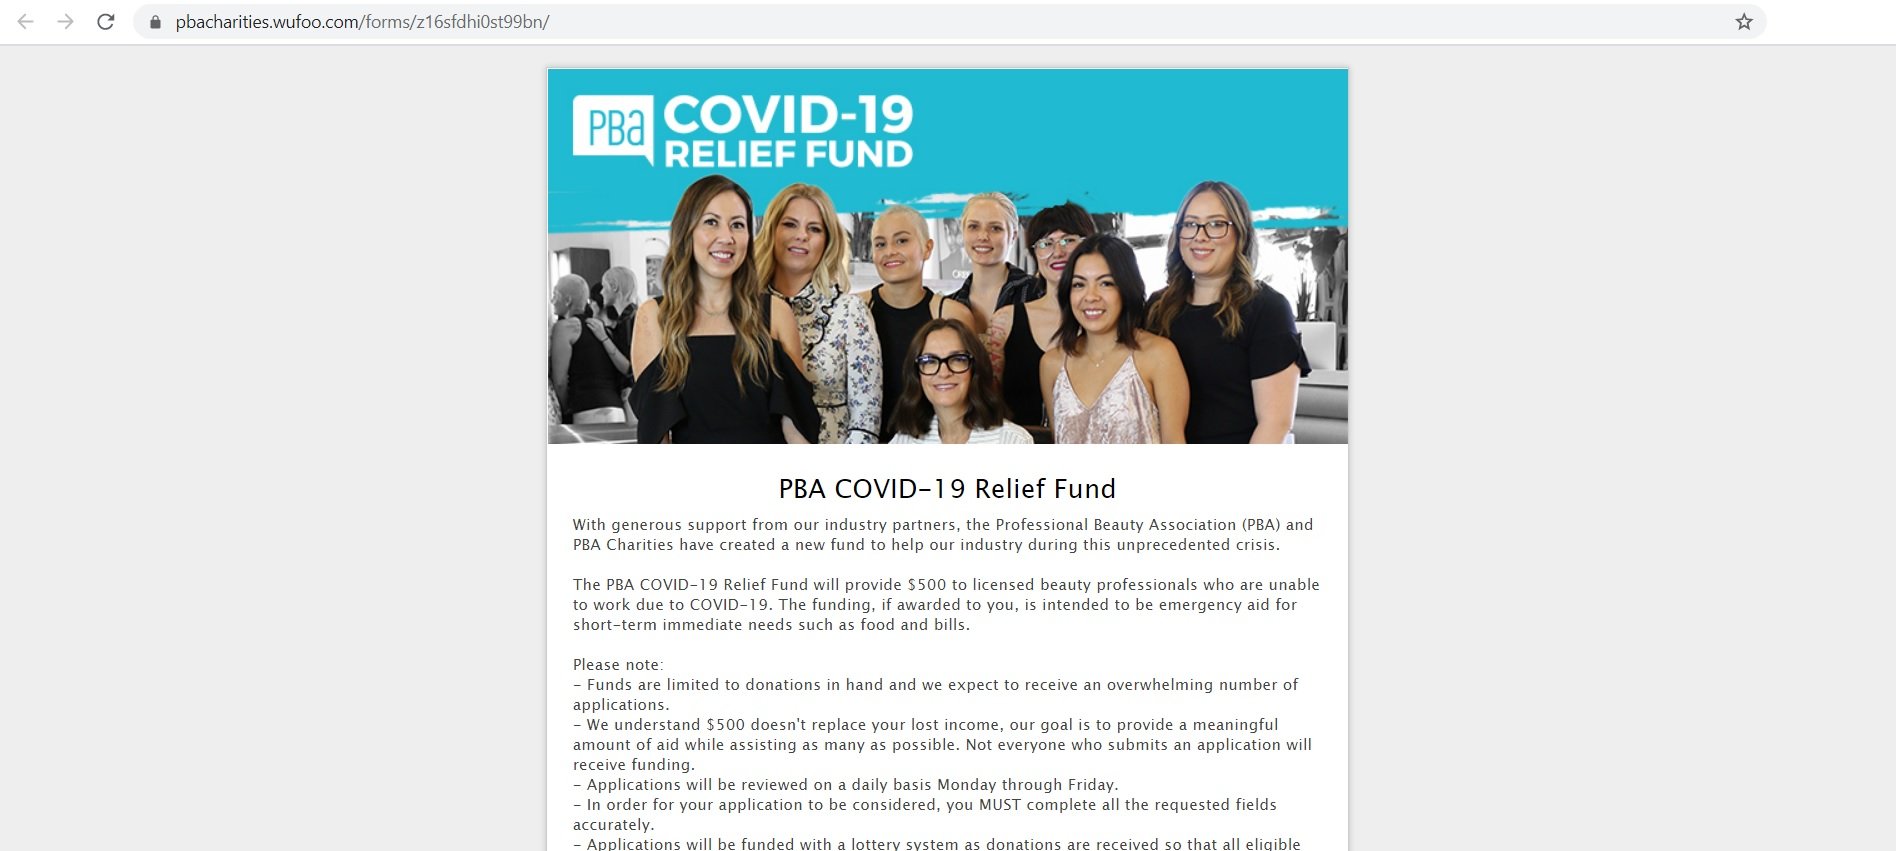 A PBA COVID-19 Relief Fund Scam